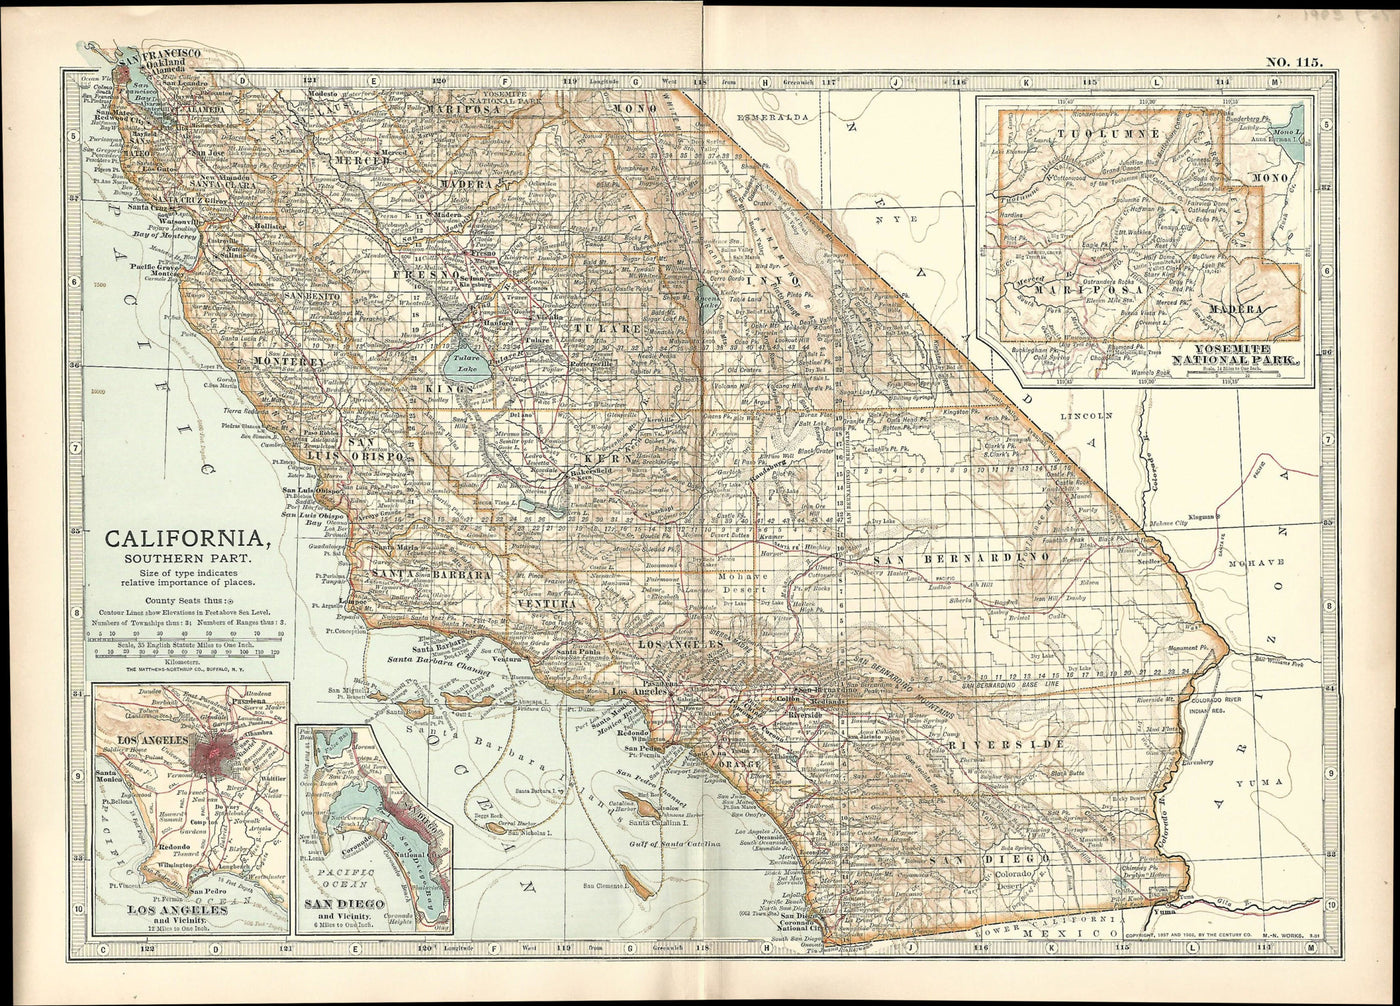 California, Southern Part, Encyclopedia Britannica 1903